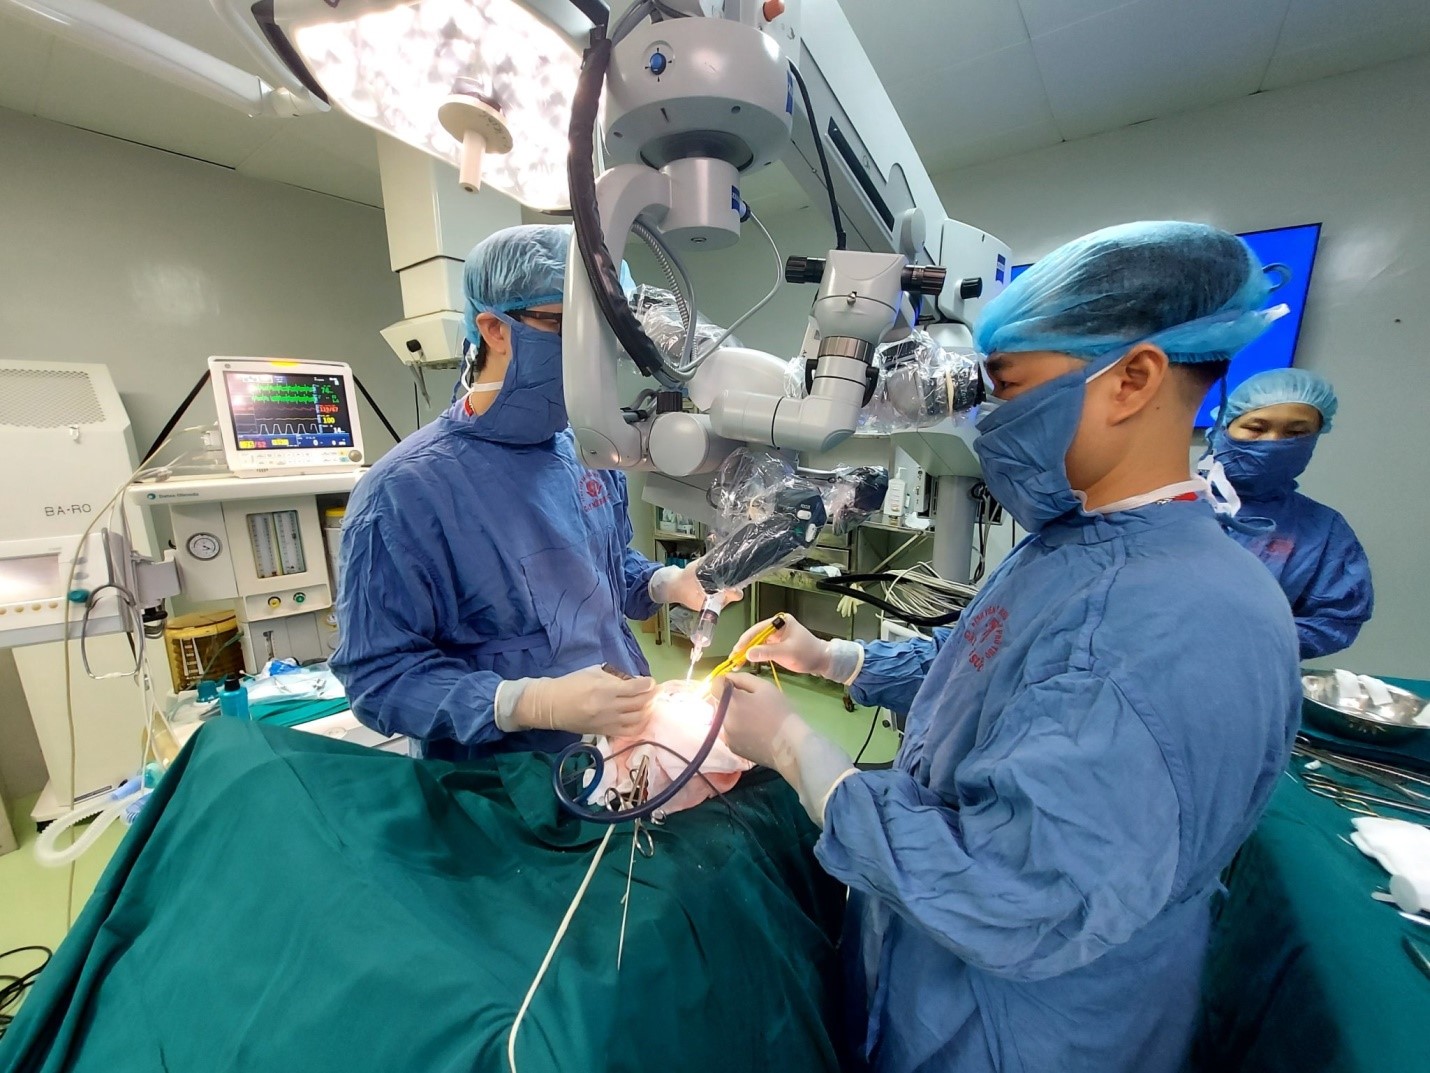 Bác sĩ Nội trú, Bác sĩ chuyên khoa II Hoàng Văn Đức (bên trái), khoa Ngoại Thần kinh đang thực hiện phẫu thuật u não/ lấy máu tụ nội sọ cho người bệnh